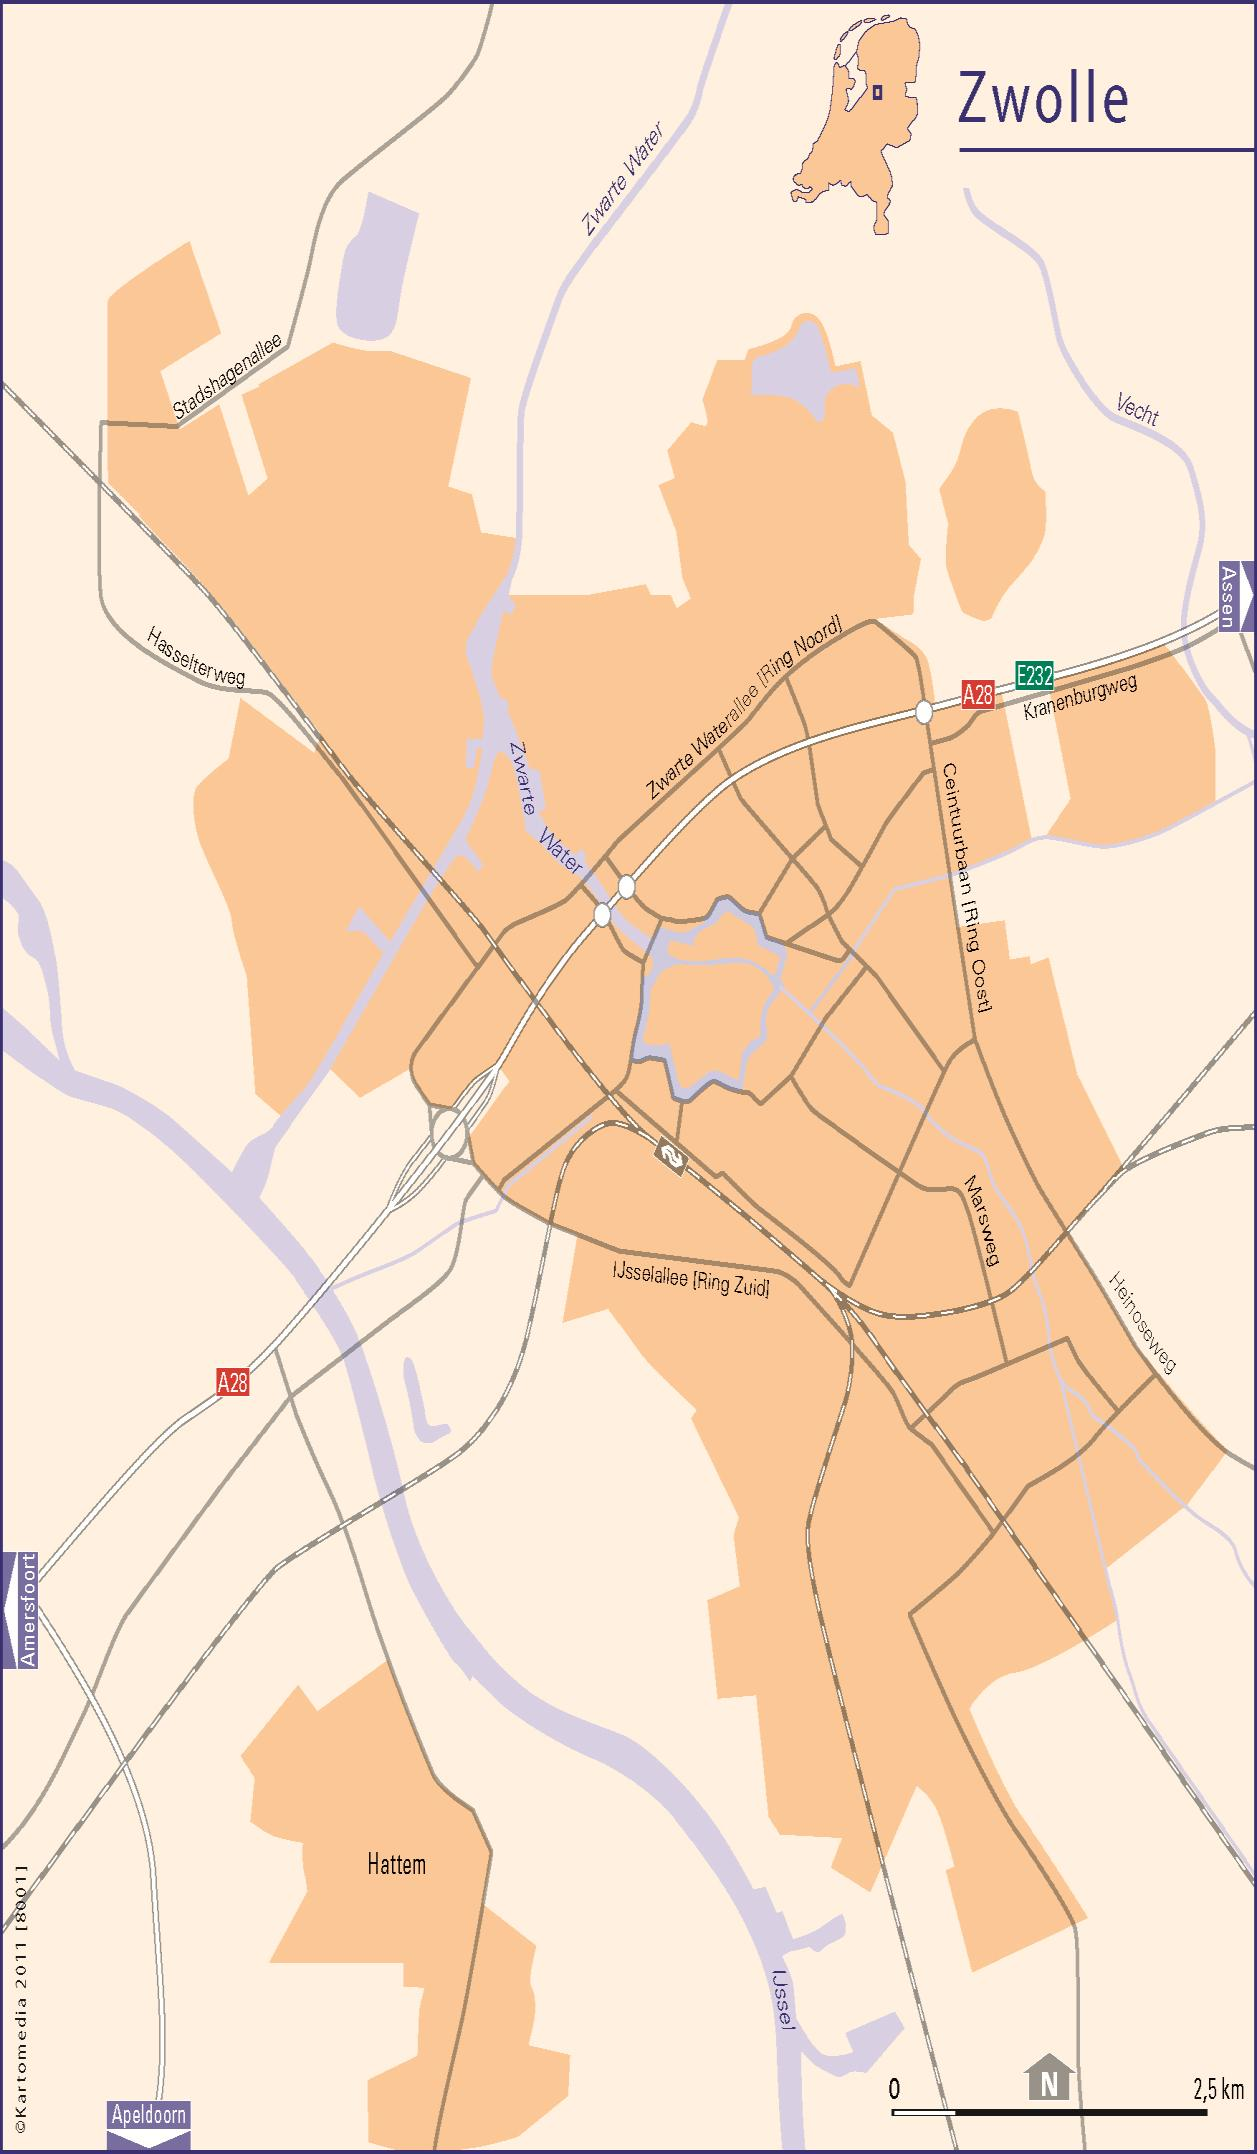 Nieuwbouwkaart gemeente Zwolle 12 8 9 10 7 5 11 4 2 3